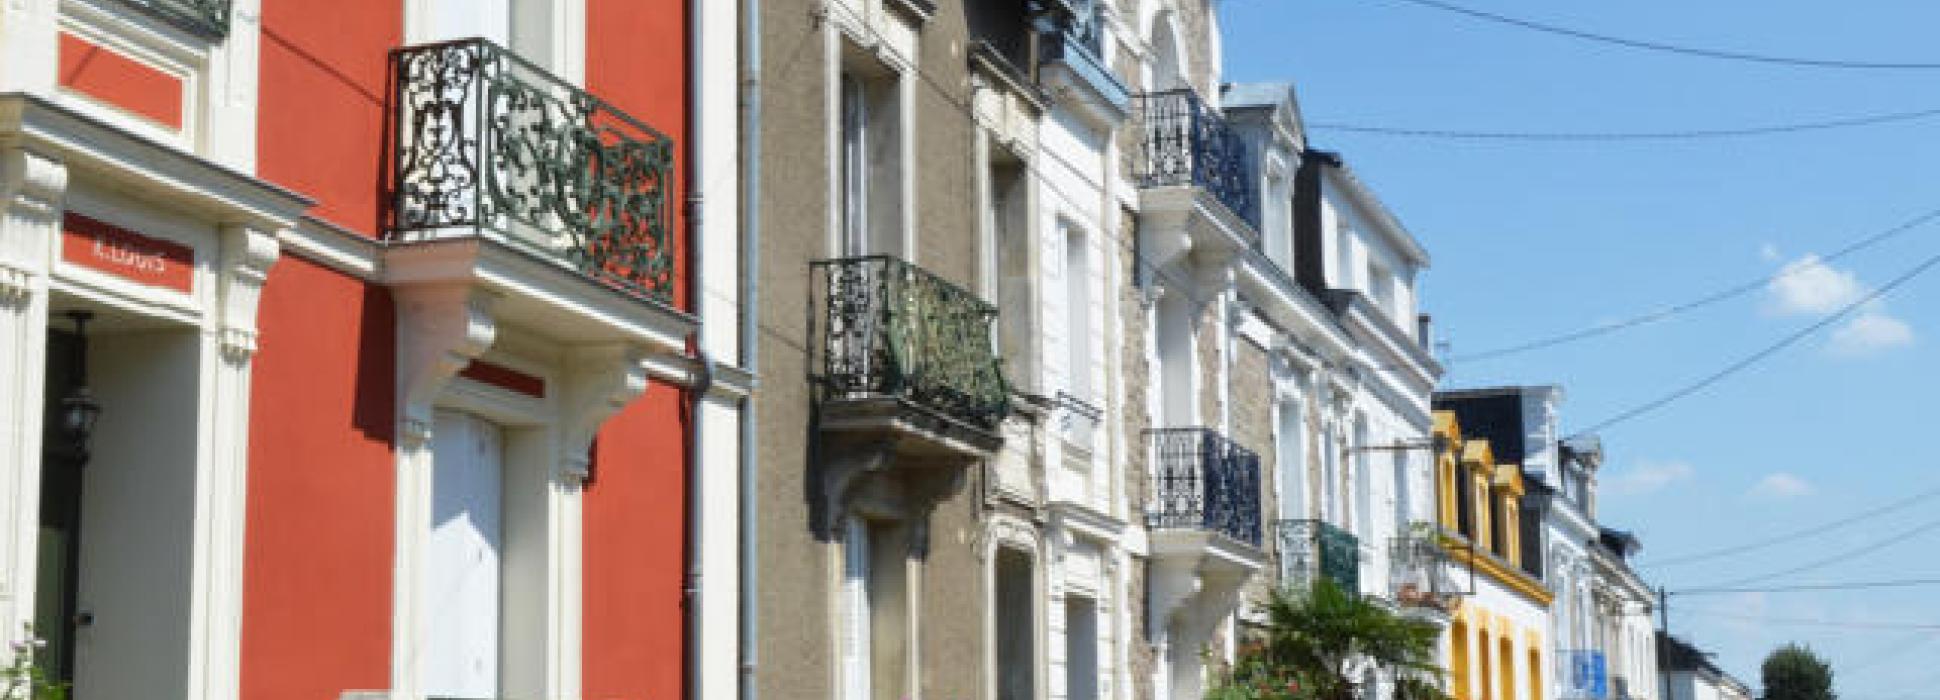 La ville de Saint-Nazaire sollicite le label " ville d’art et d’histoire "